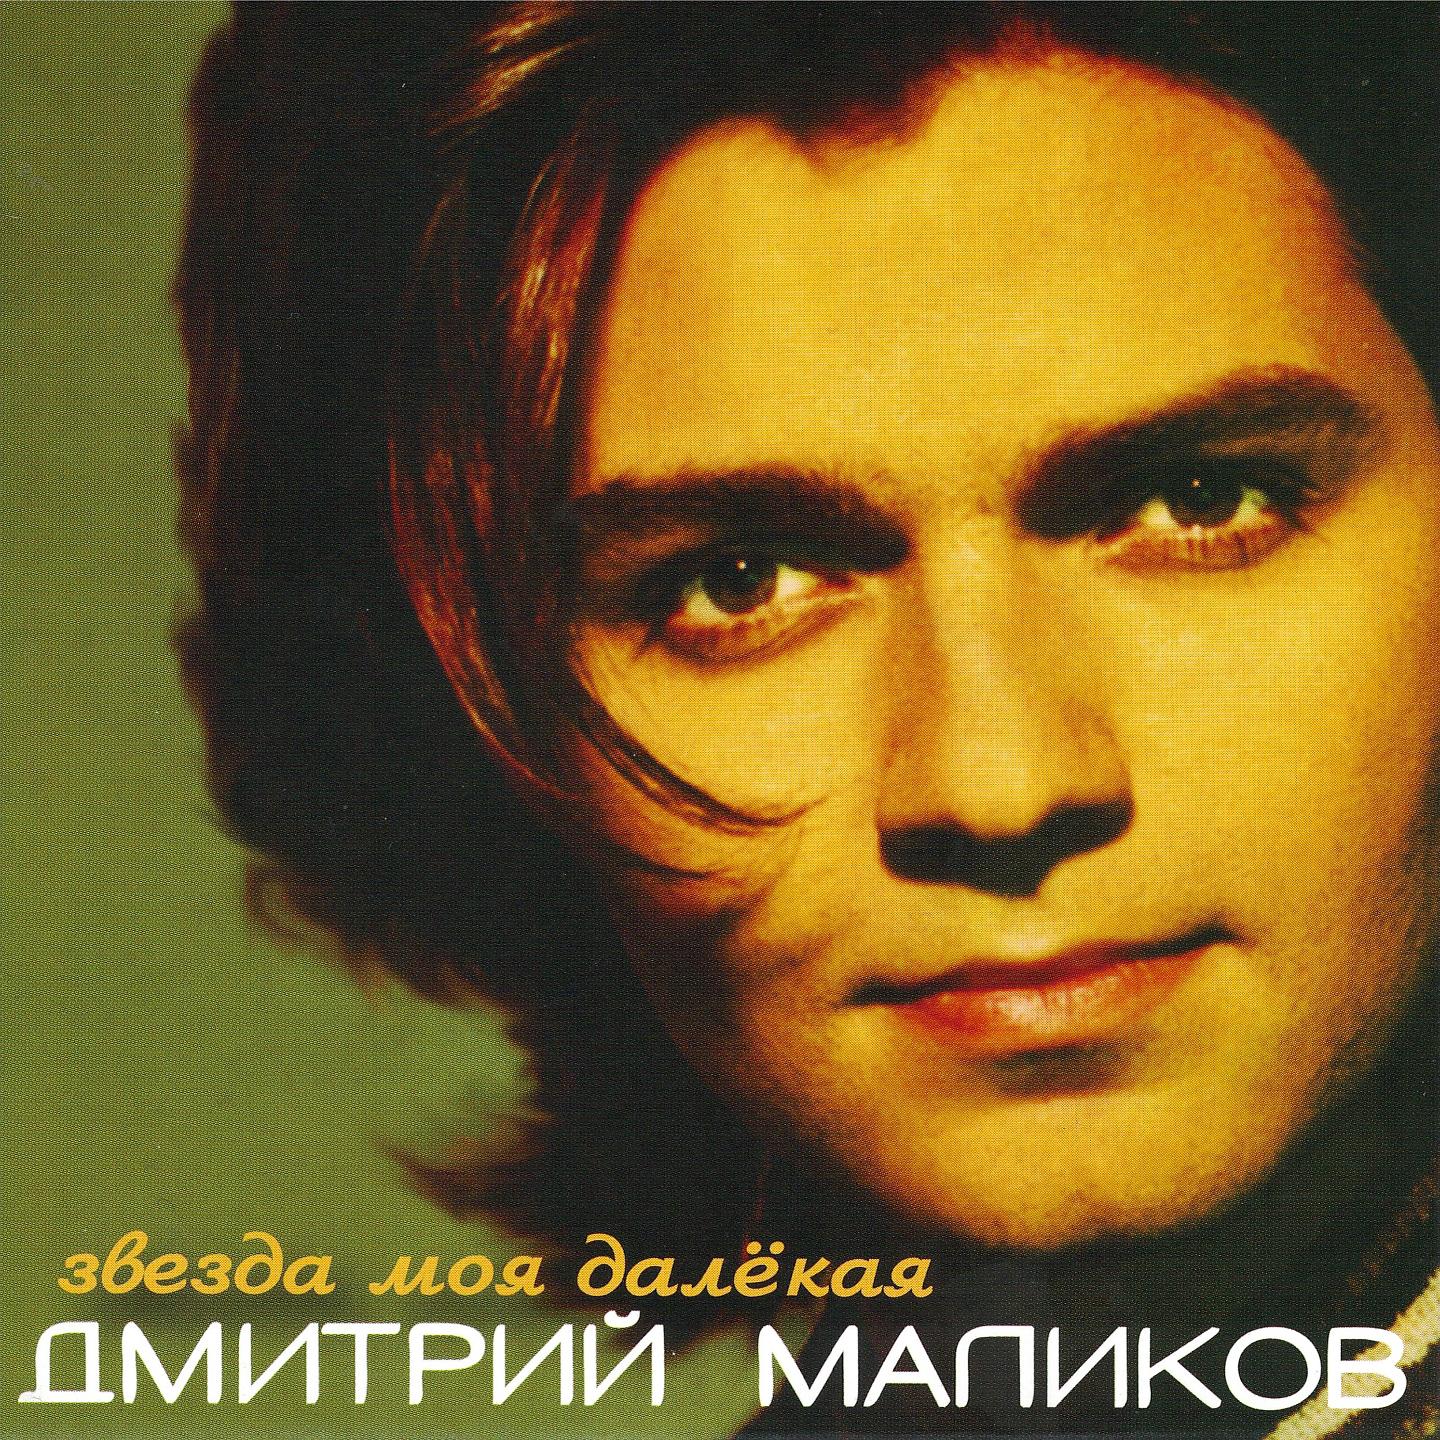 Бесплатная музыка маликов. Маликов 1998.